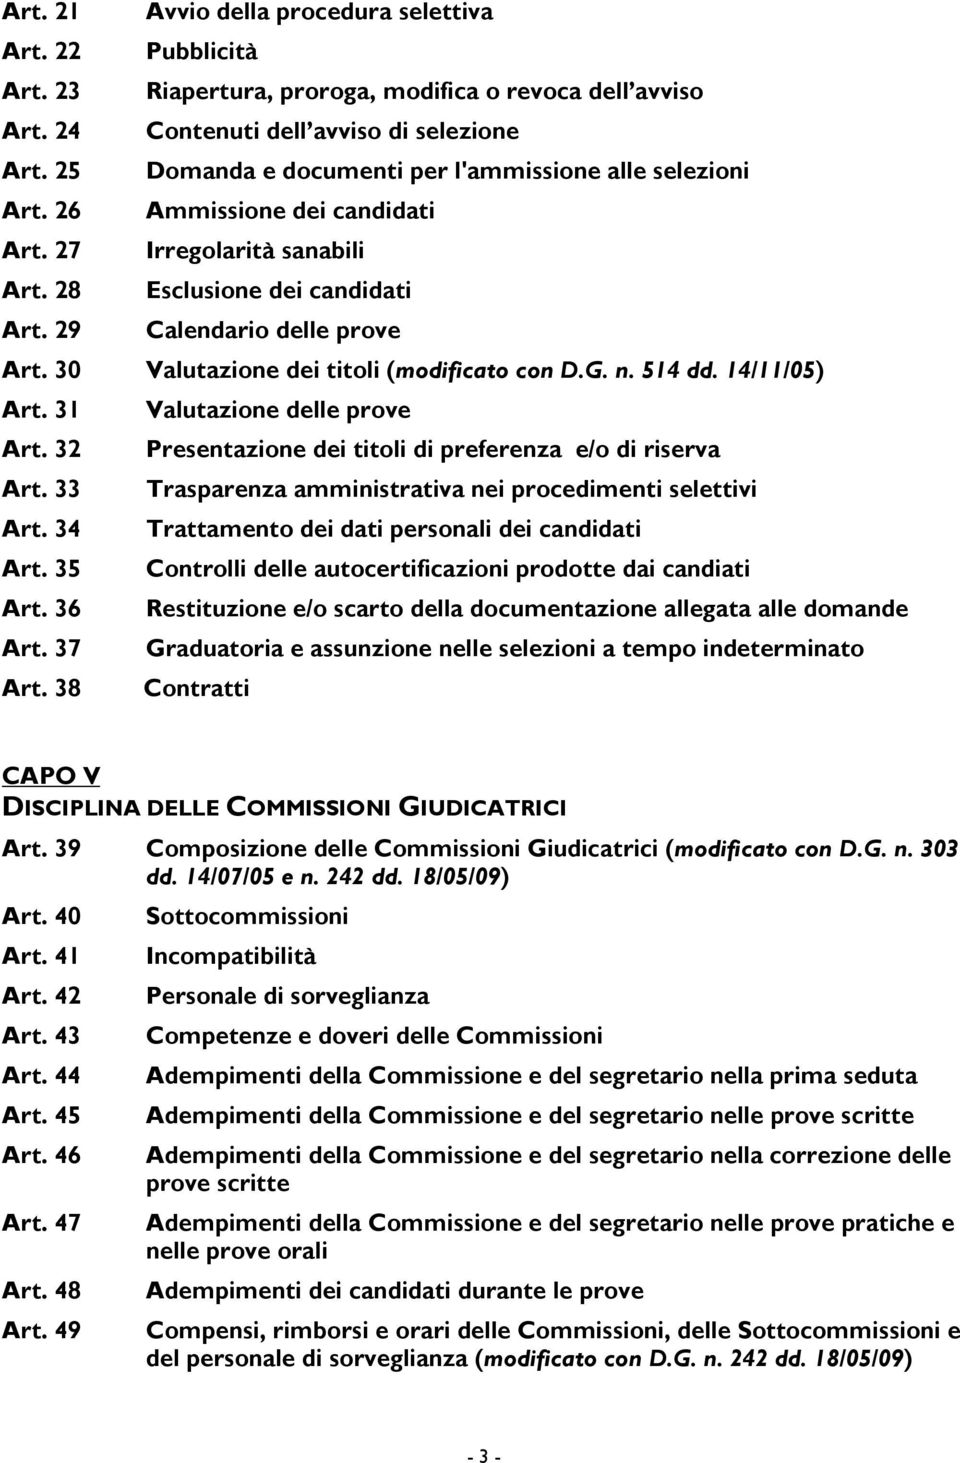 30 Valutazione dei titoli (modificato con D.G. n. 514 dd. 14/11/05) Art. 31 Valutazione delle prove Art. 32 Presentazione dei titoli di preferenza e/o di riserva Art.